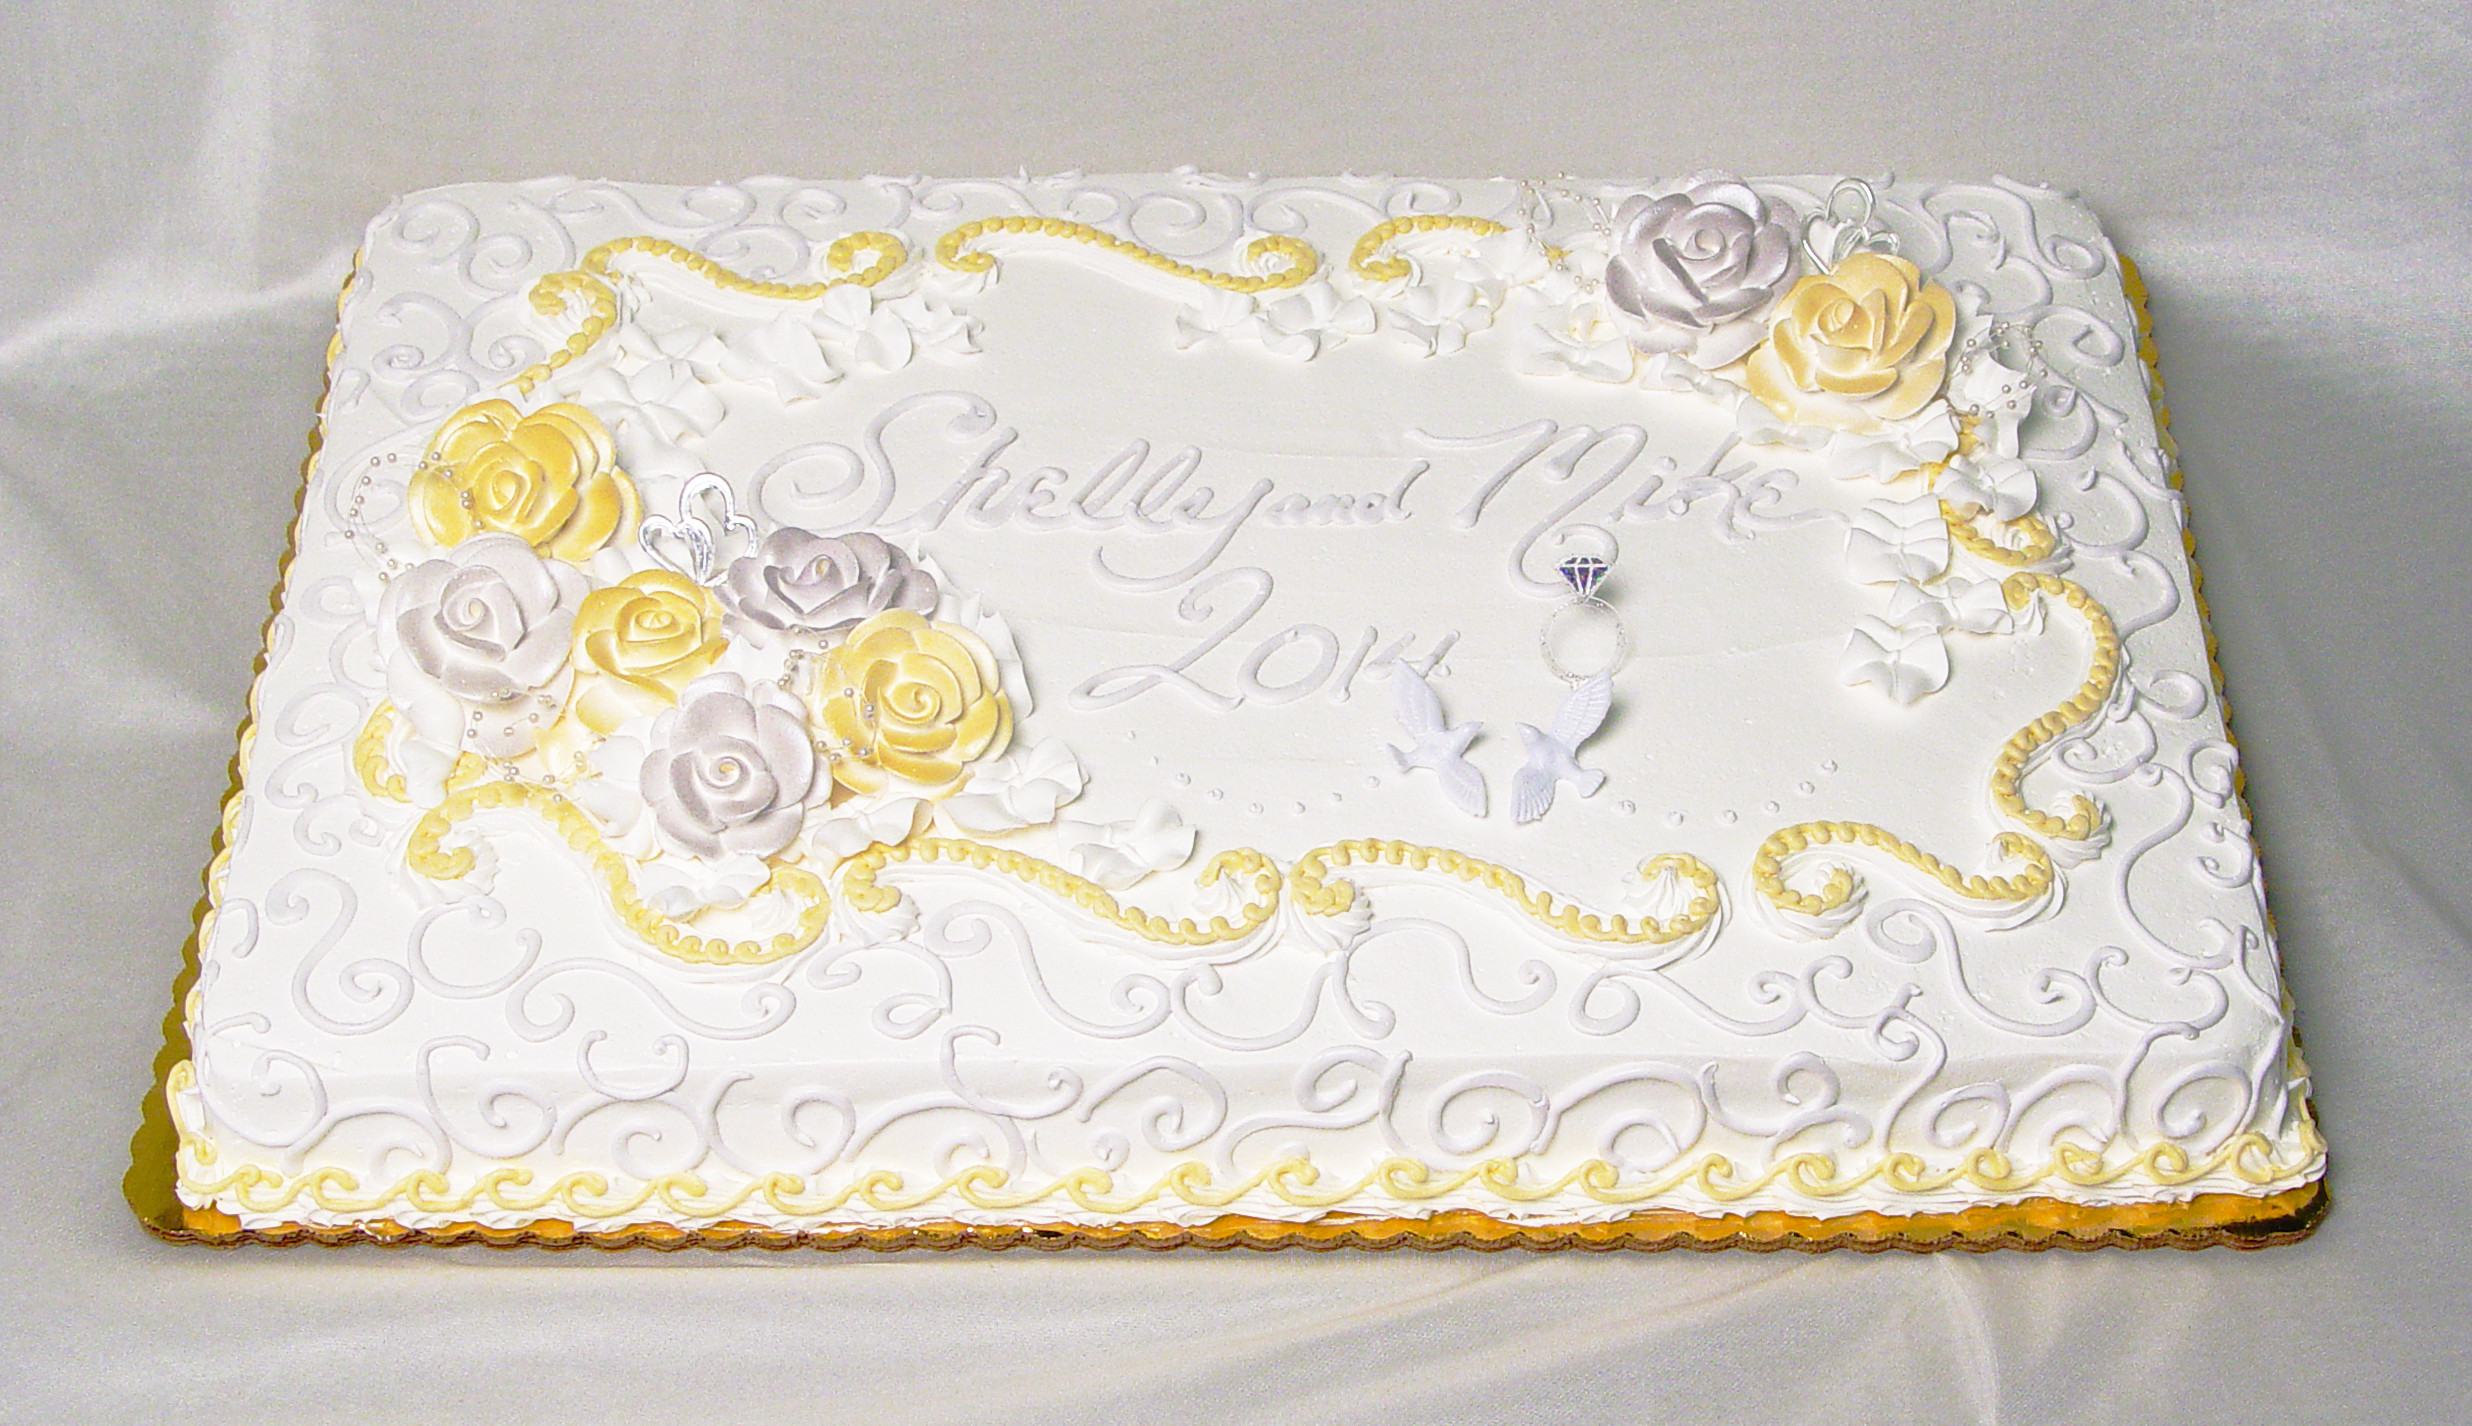 Wedding Sheet Cake Ideas
 Acme Fresh Market Wedding Cakes